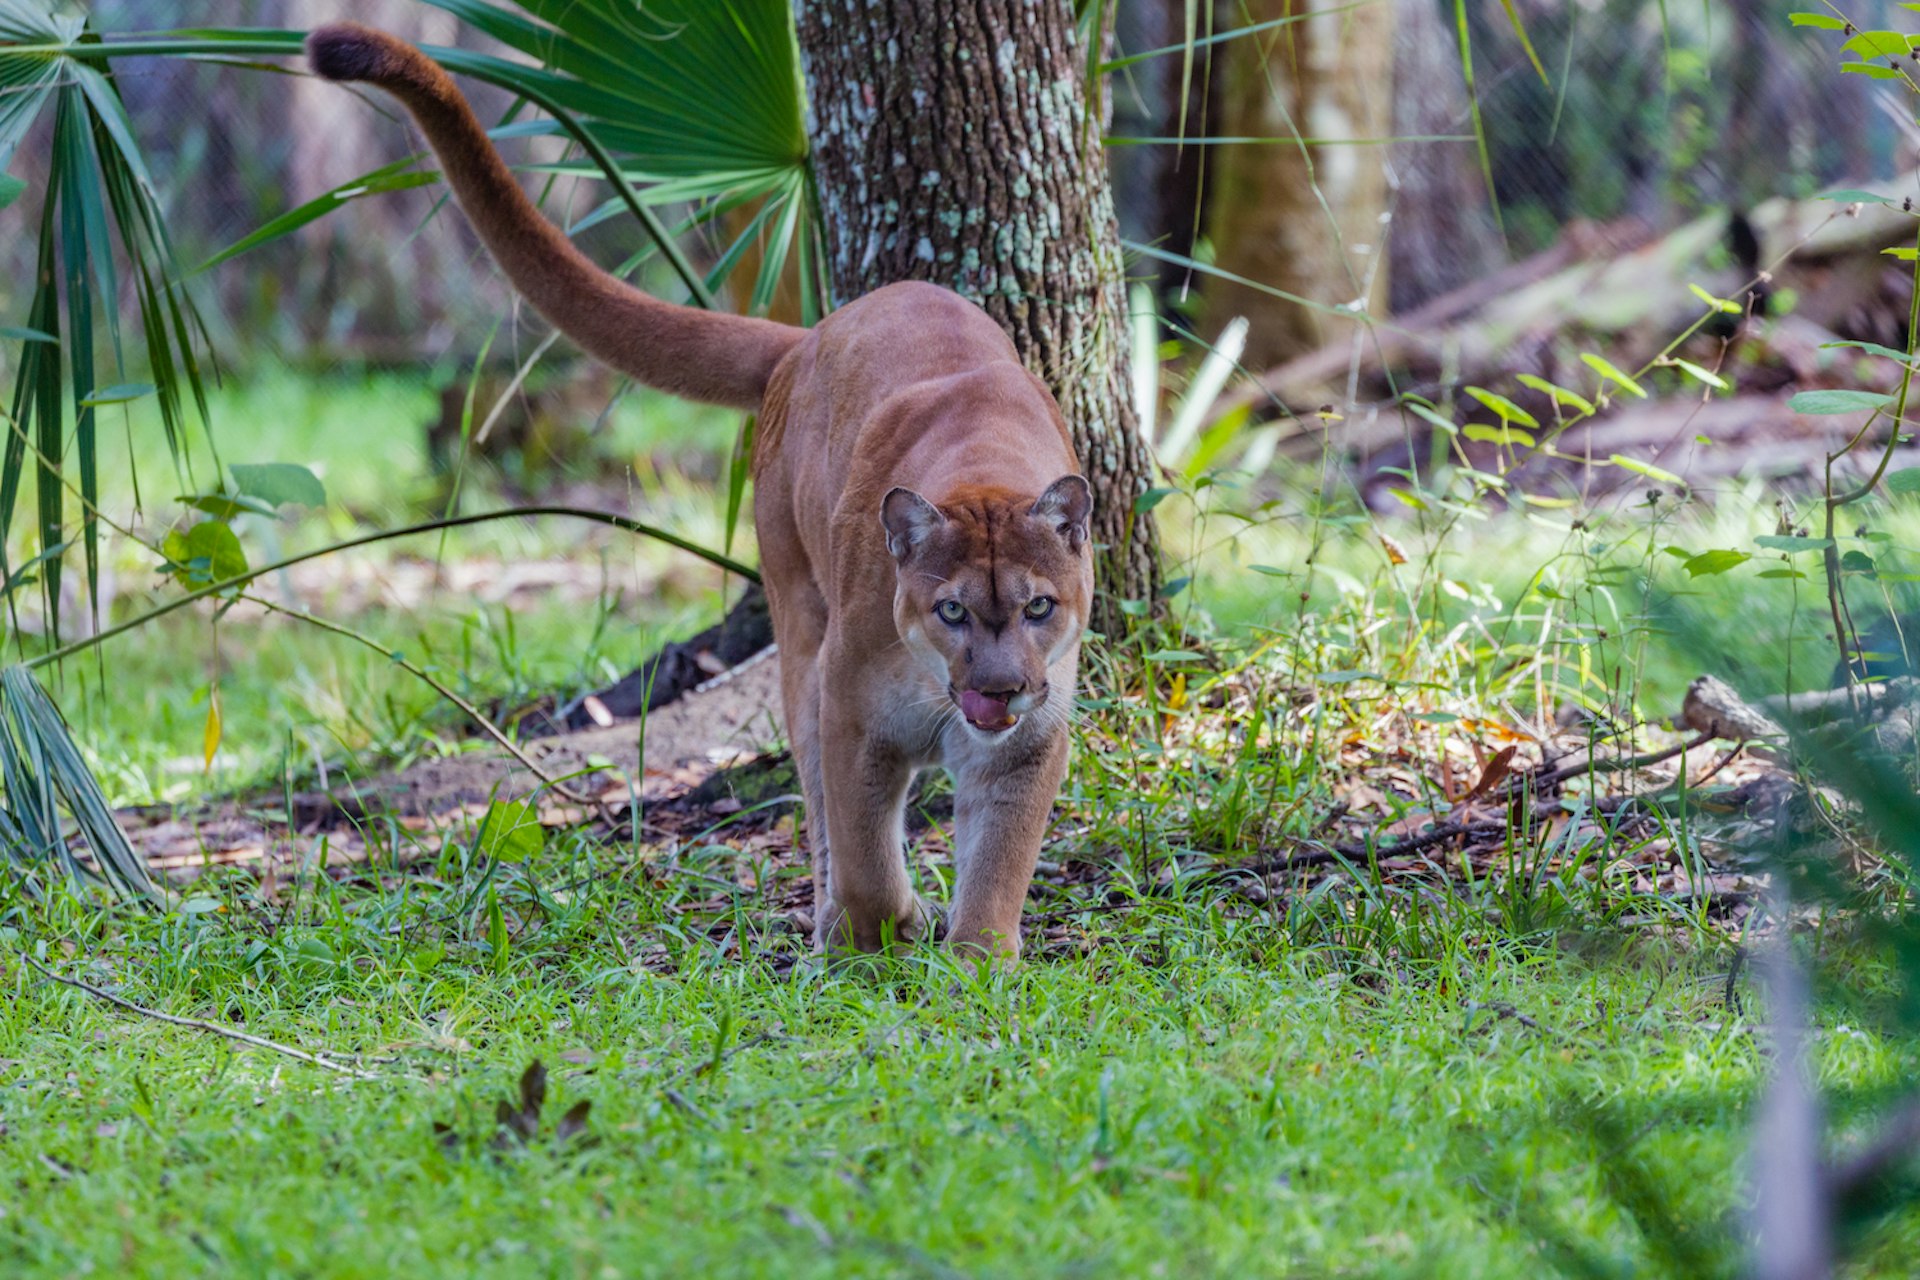 A Florida panther, finished eating, walks toward camera, Everglades National Park, Florida, USA